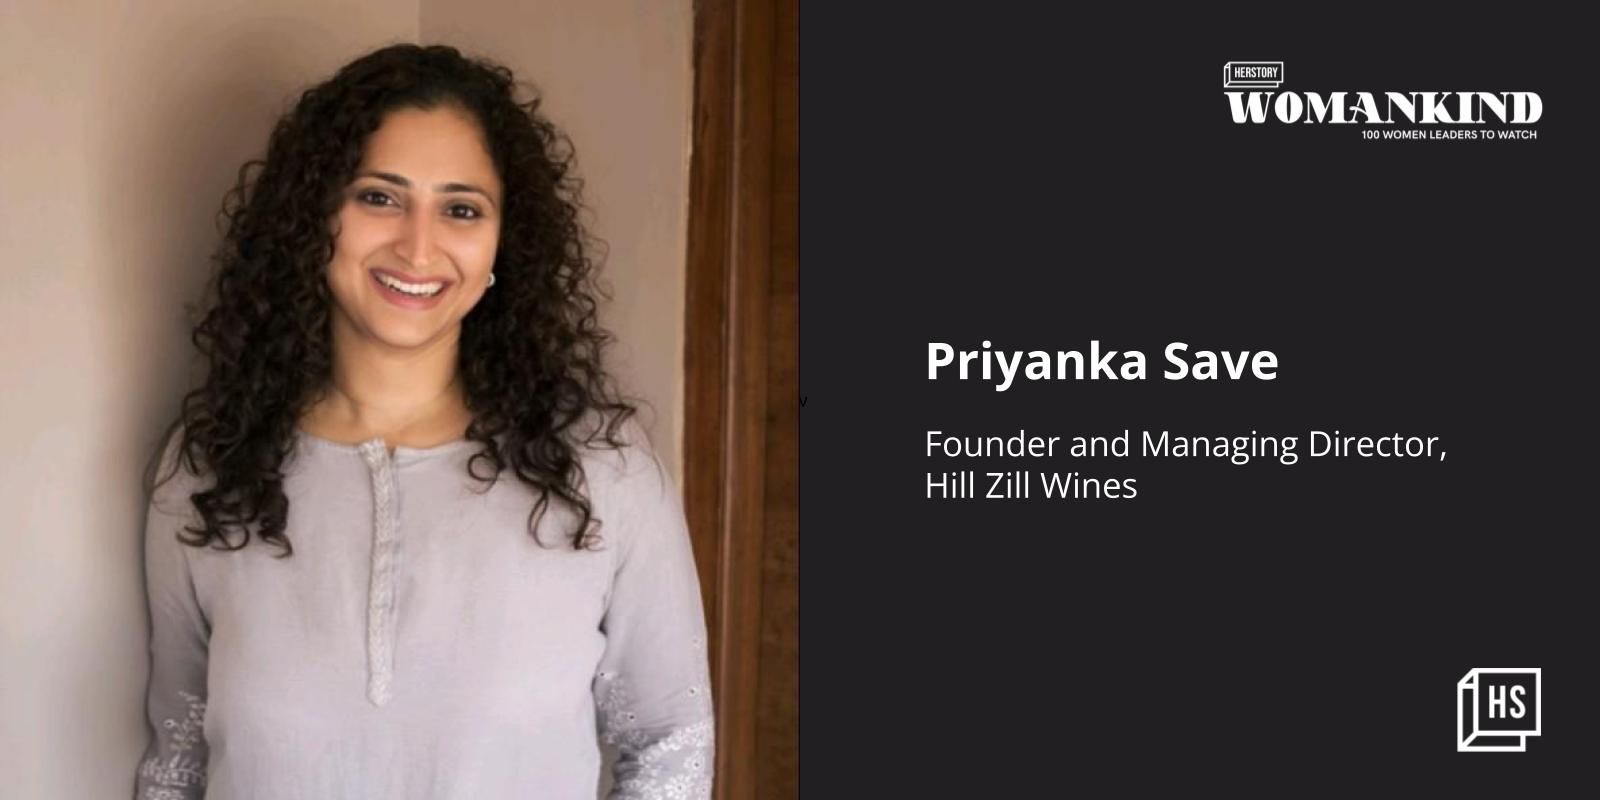 [100 Emerging Women Leaders] Meet entrepreneur Priyanka Save who engineered her way to make wine from Chikoo